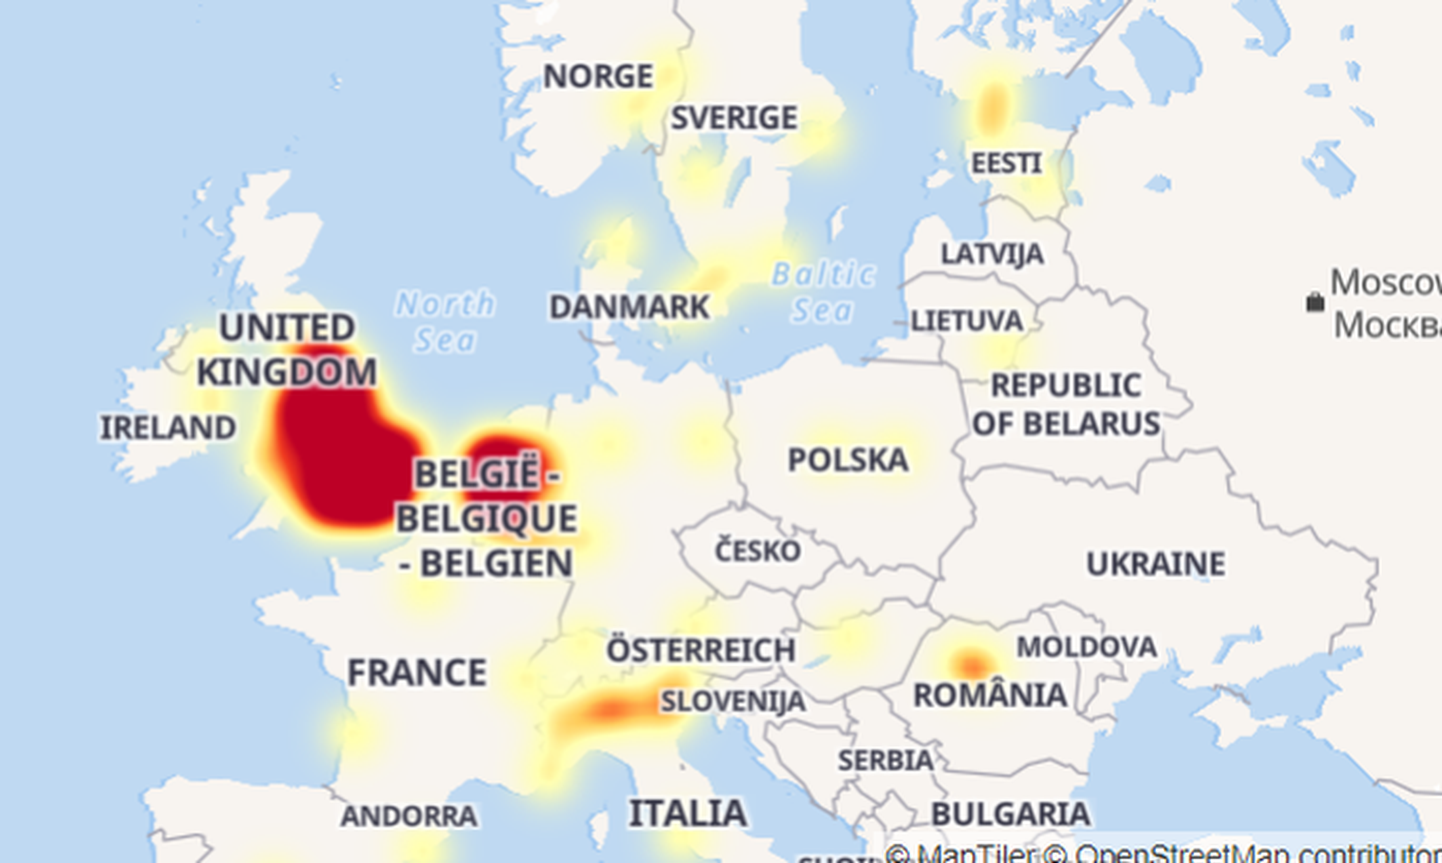 Keskkonna outage.report kasutajad on teada andnud serveriprobleemidest näiteks Suurbritannias, Saksamaal, Lõuna-Aafrikas, Taanis, Norras ja Eestis.